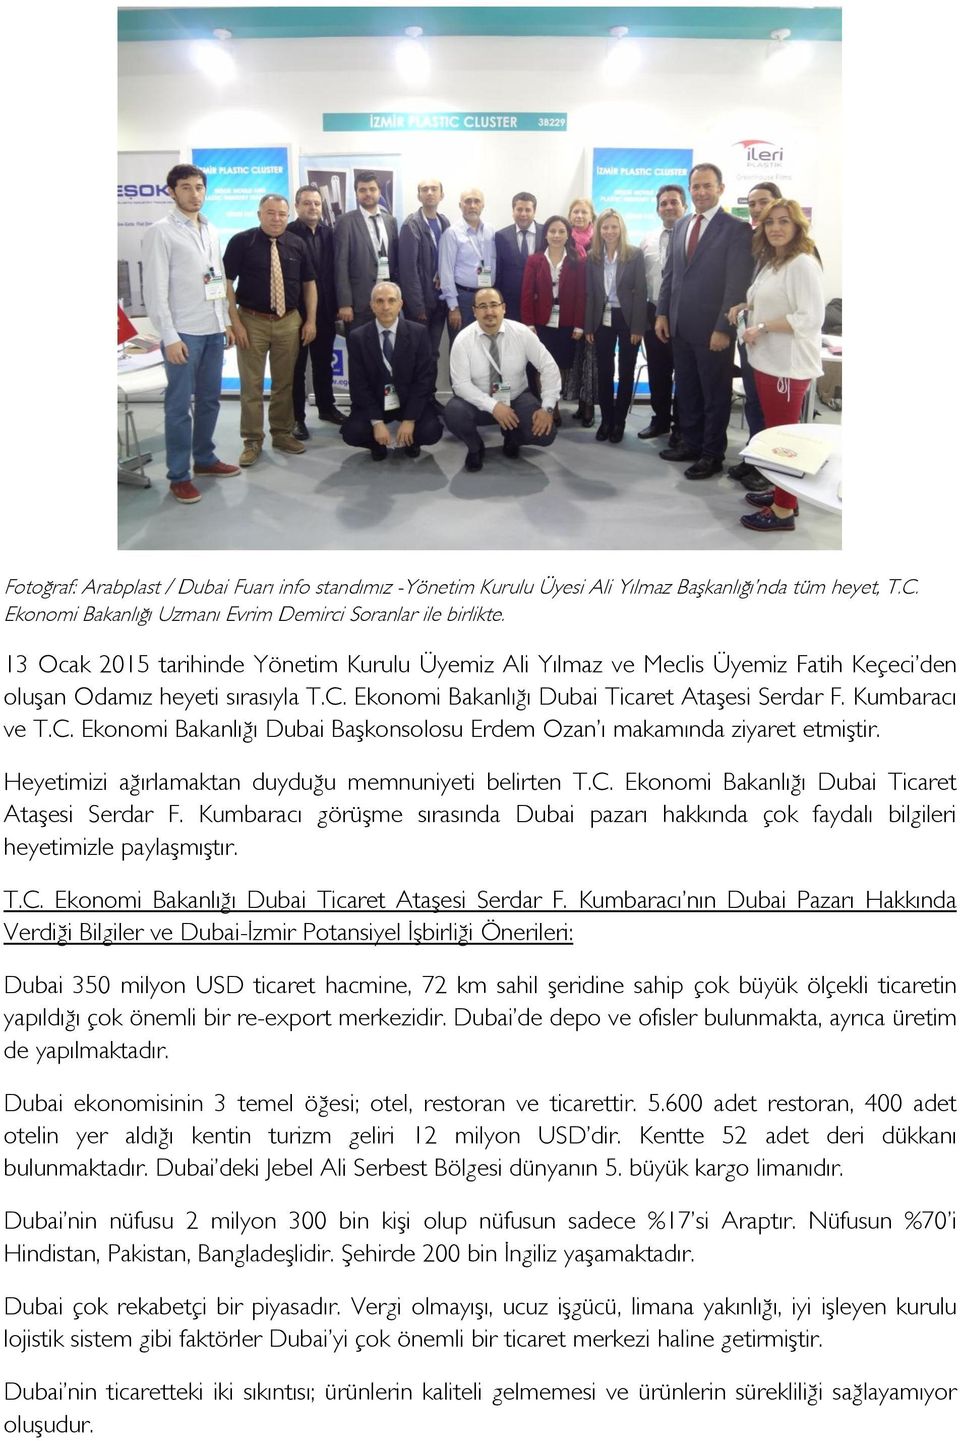 Ekonomi Bakanlığı Dubai Ticaret Ataşesi Serdar F. Kumbaracı ve T.C. Ekonomi Bakanlığı Dubai Başkonsolosu Erdem Ozan ı makamında ziyaret etmiştir.